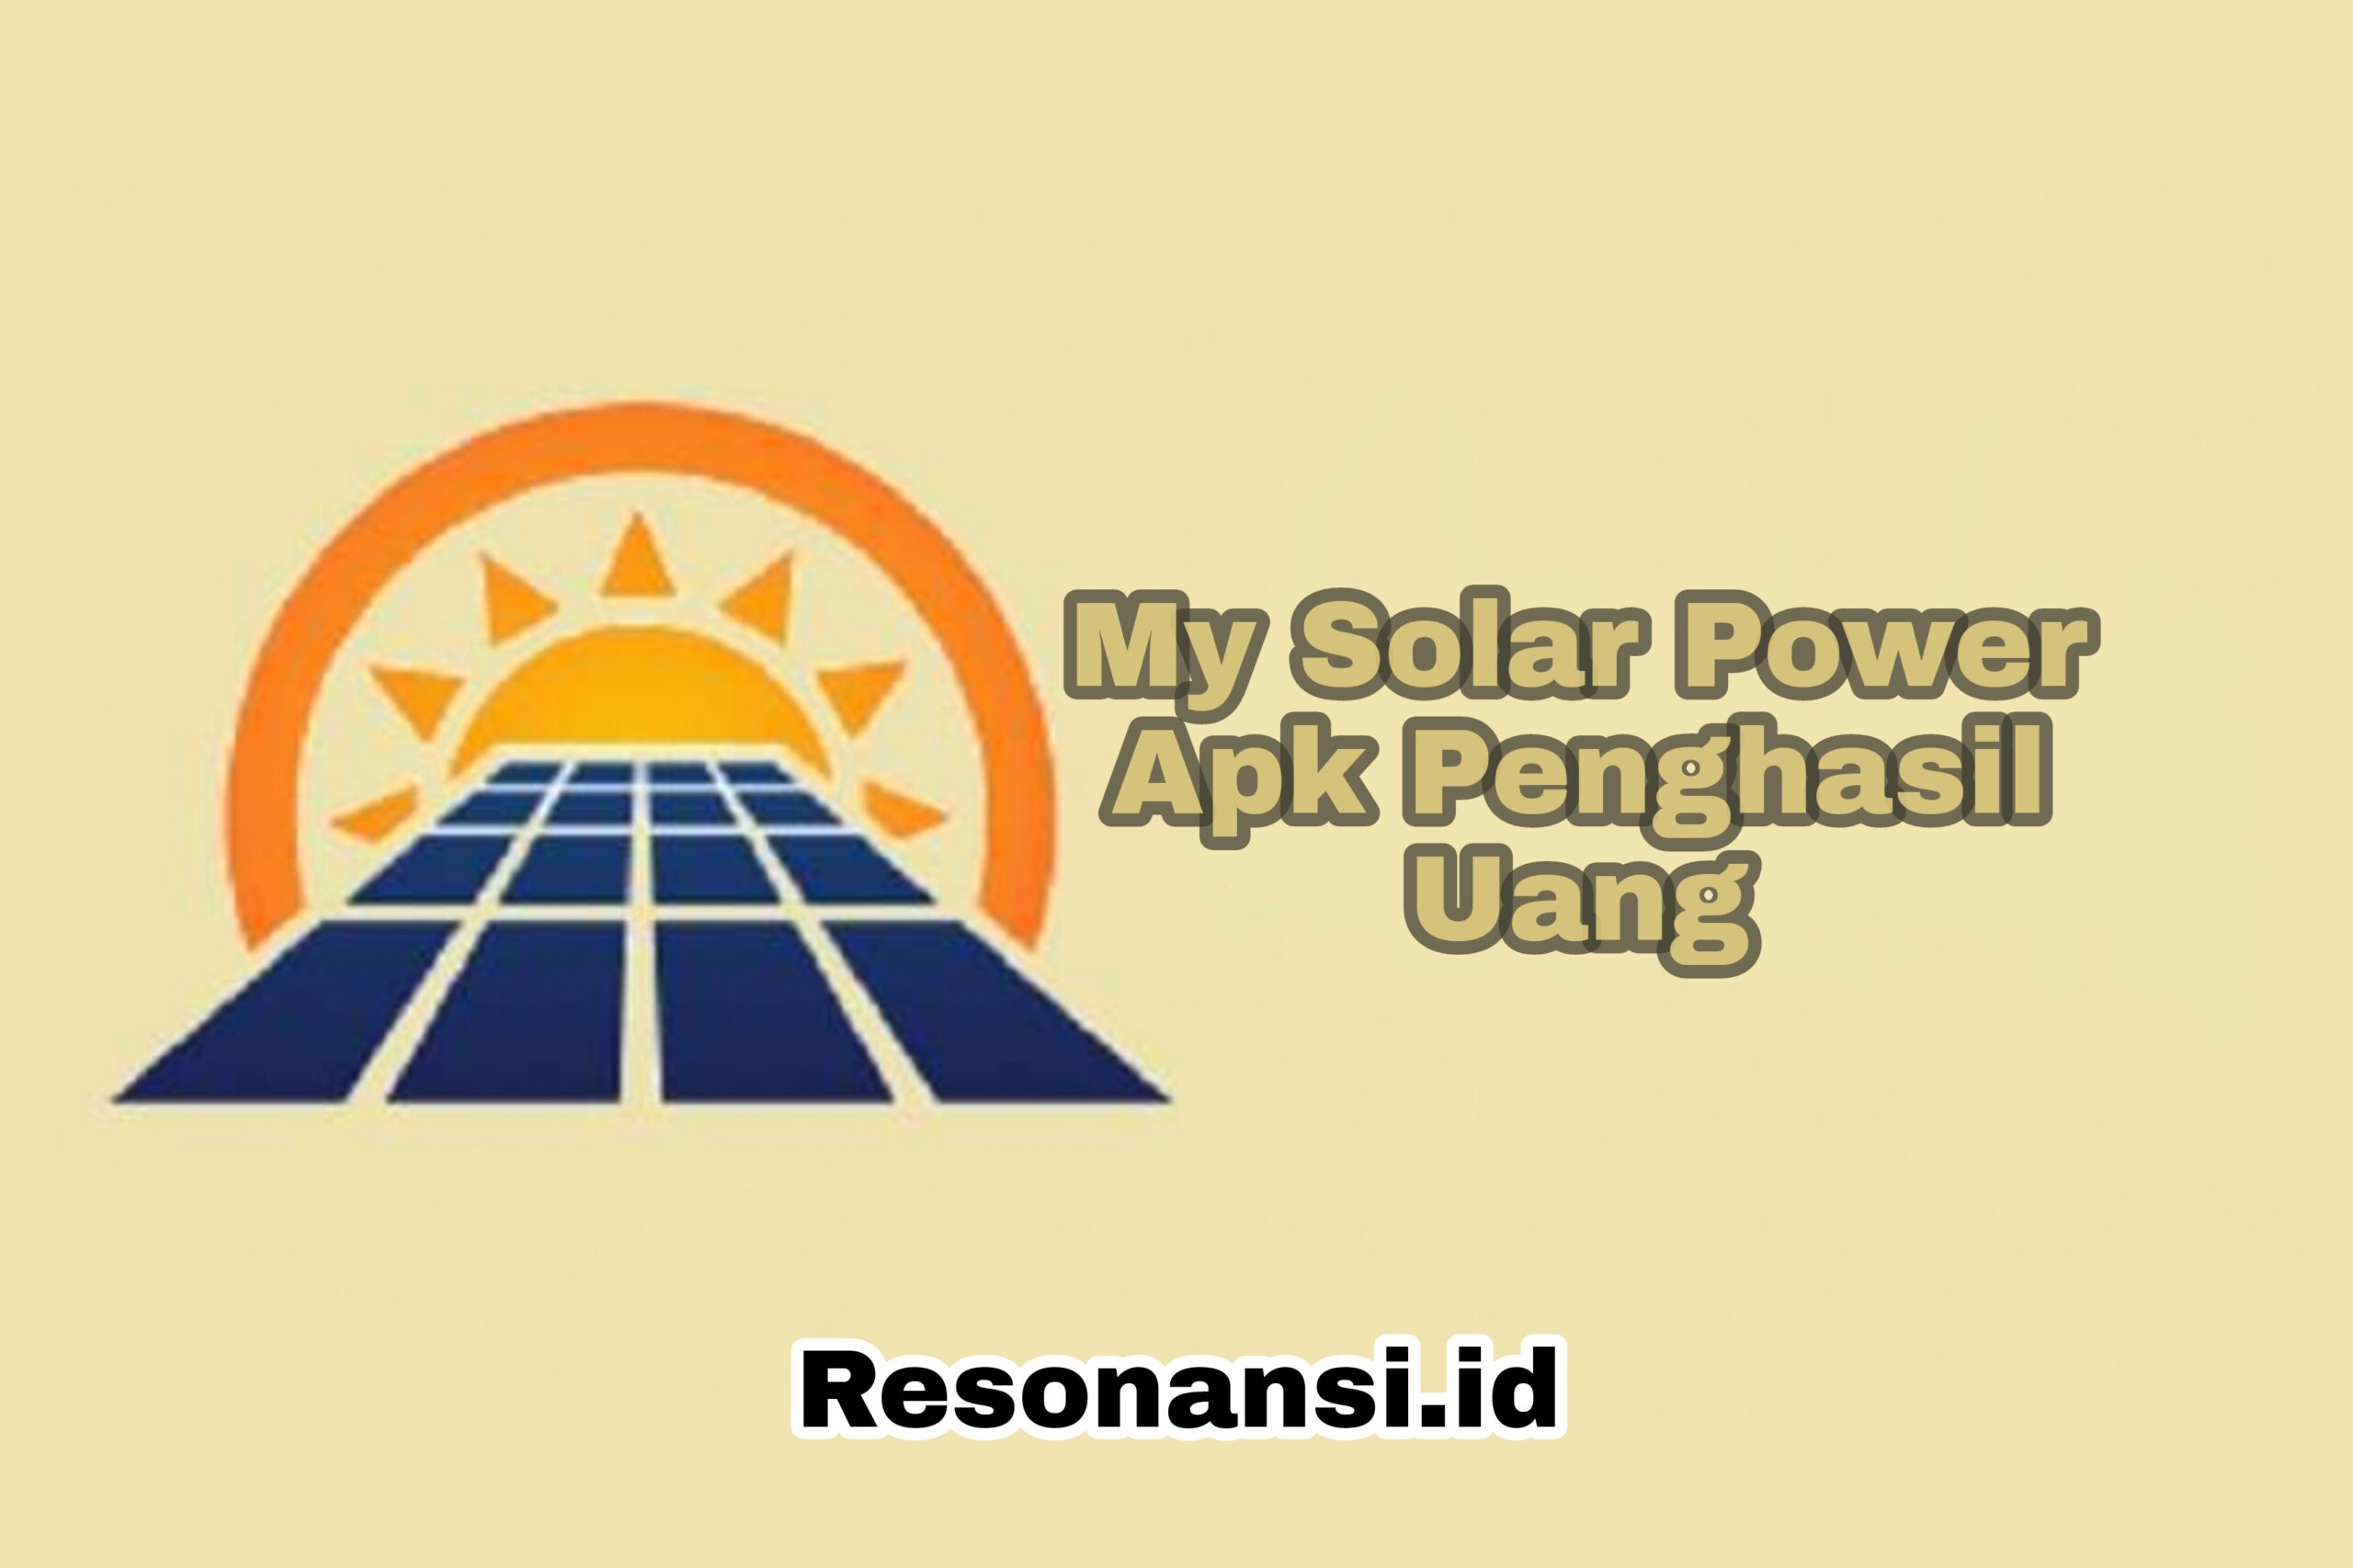 My Solar Power Apk Penghasil Uang